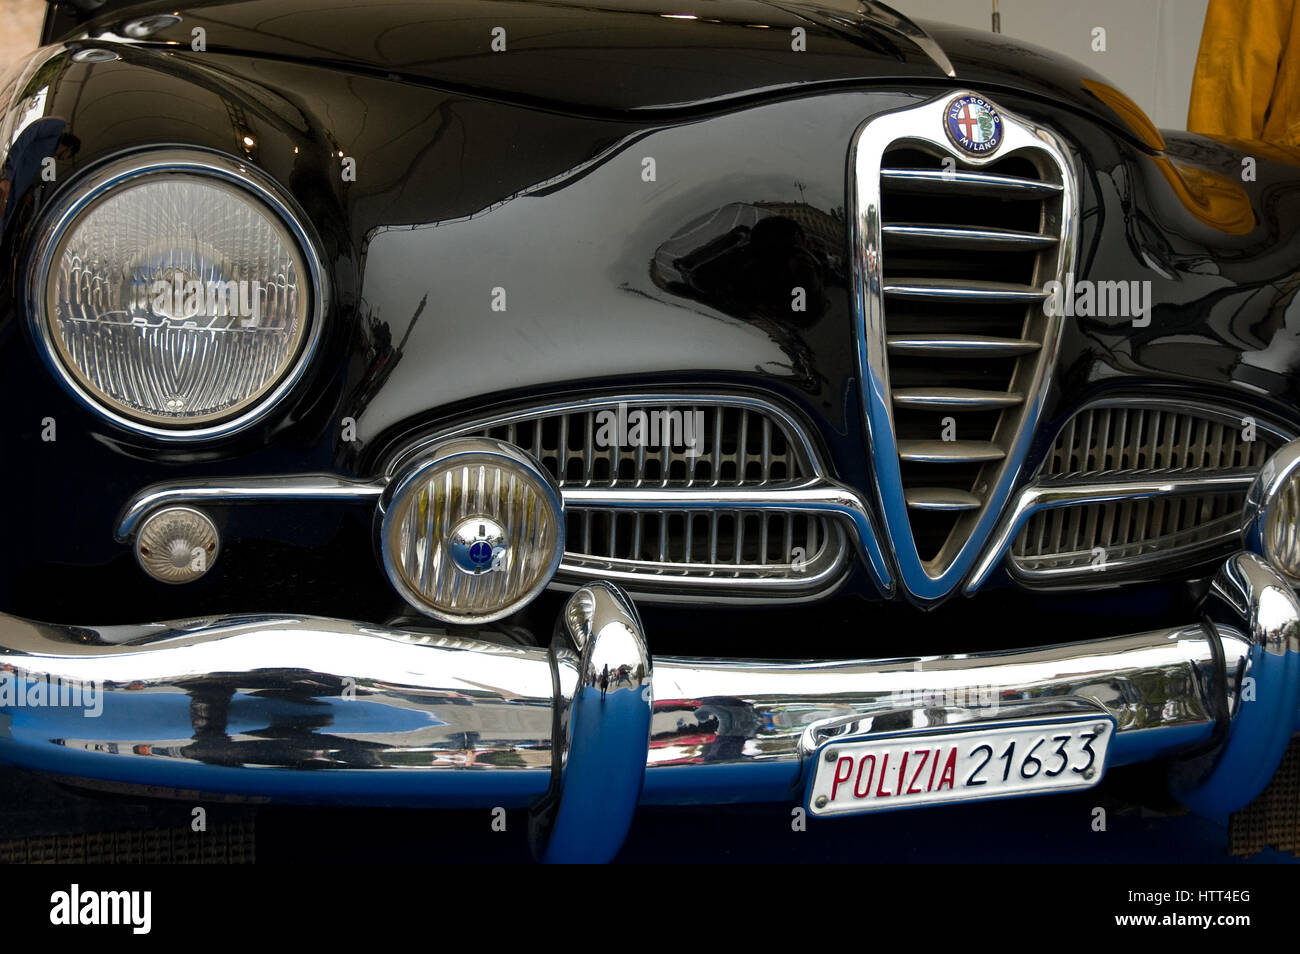 Roma, Italia - 14 maggio 2005. Alfa Romeo 1900 TI Super lucido nero anteriore, vintage 50s auto della polizia italiana squad equipment exhibition Foto Stock